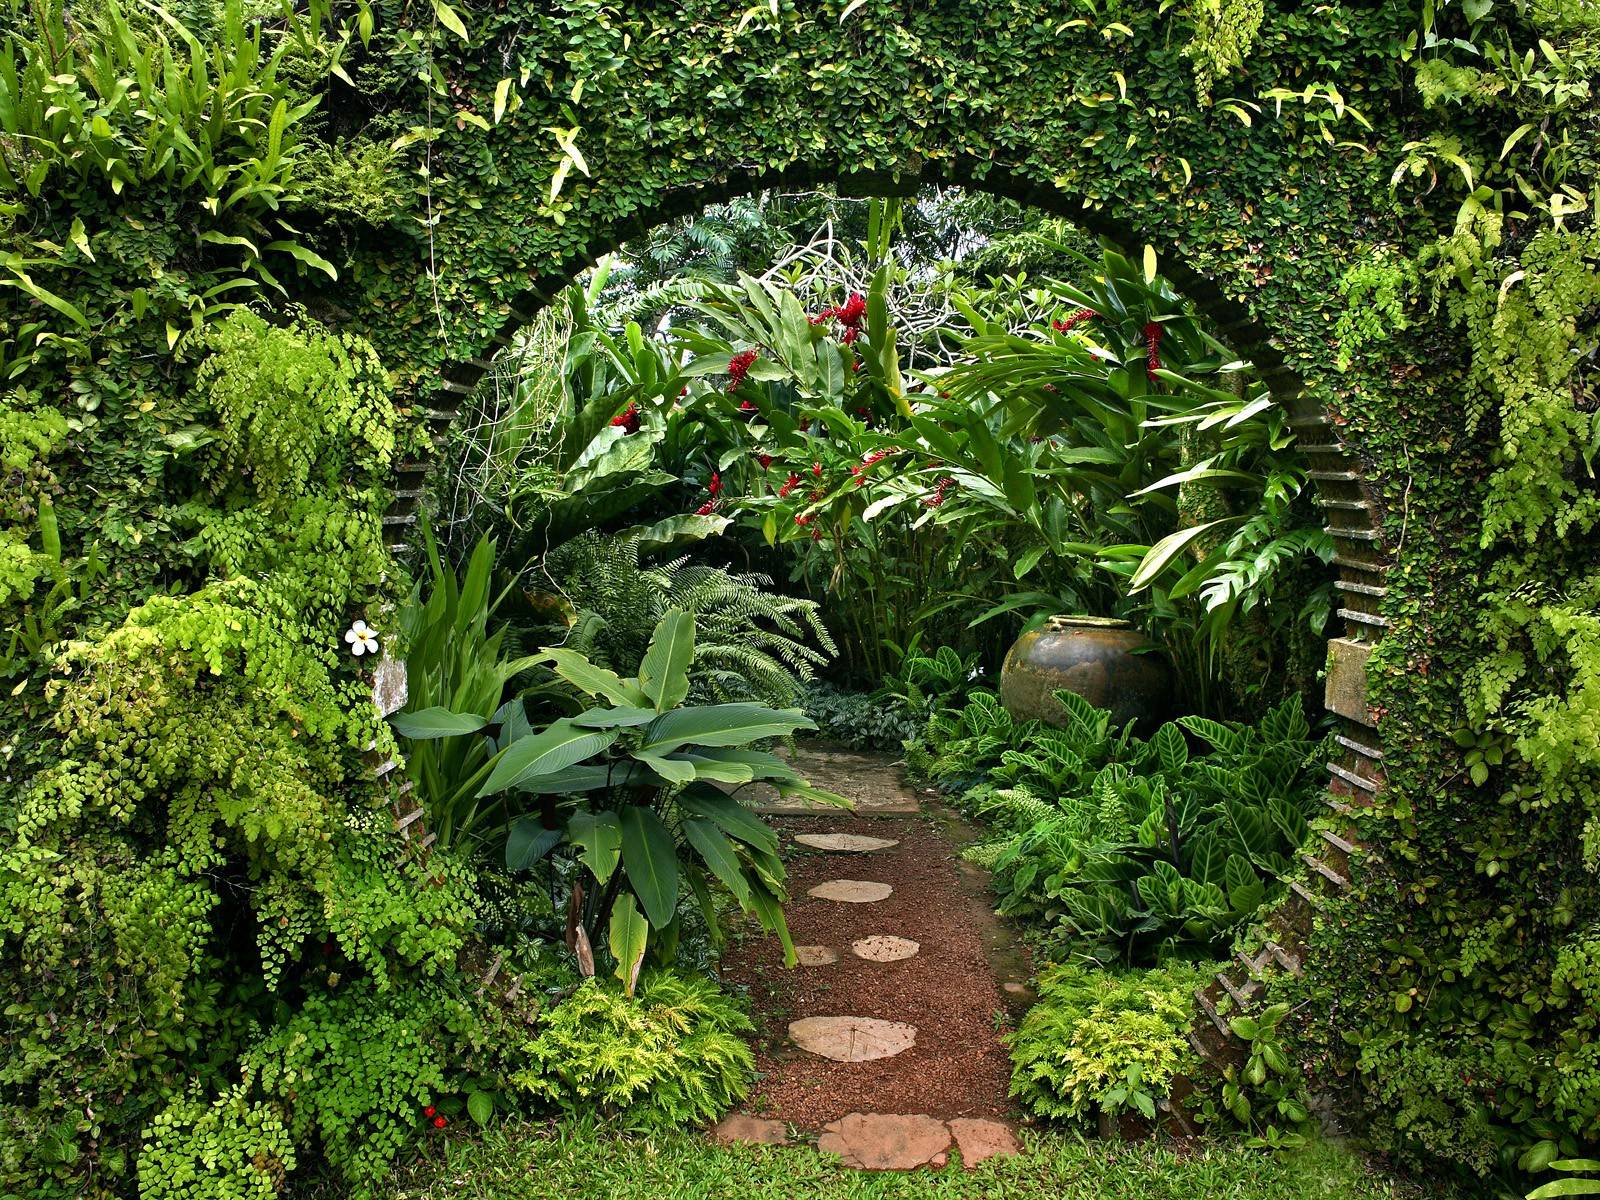 An archway makes a grand entrance into a lush green garden.